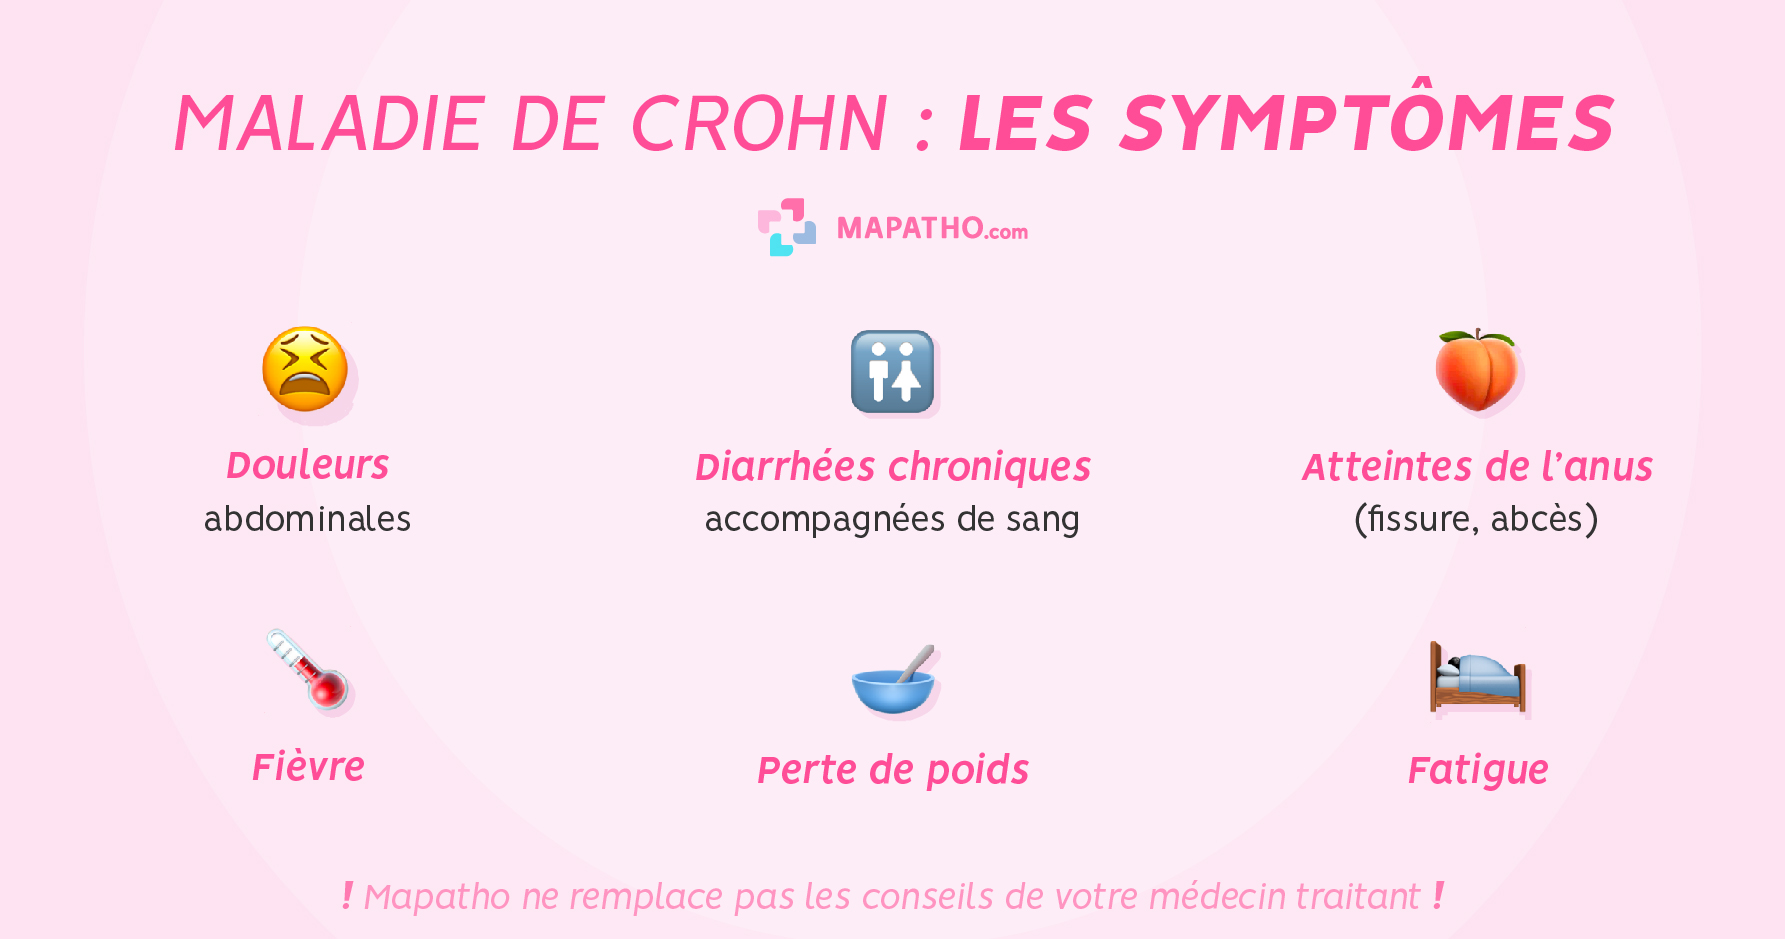 Les symptômes de la maladie de Crohn